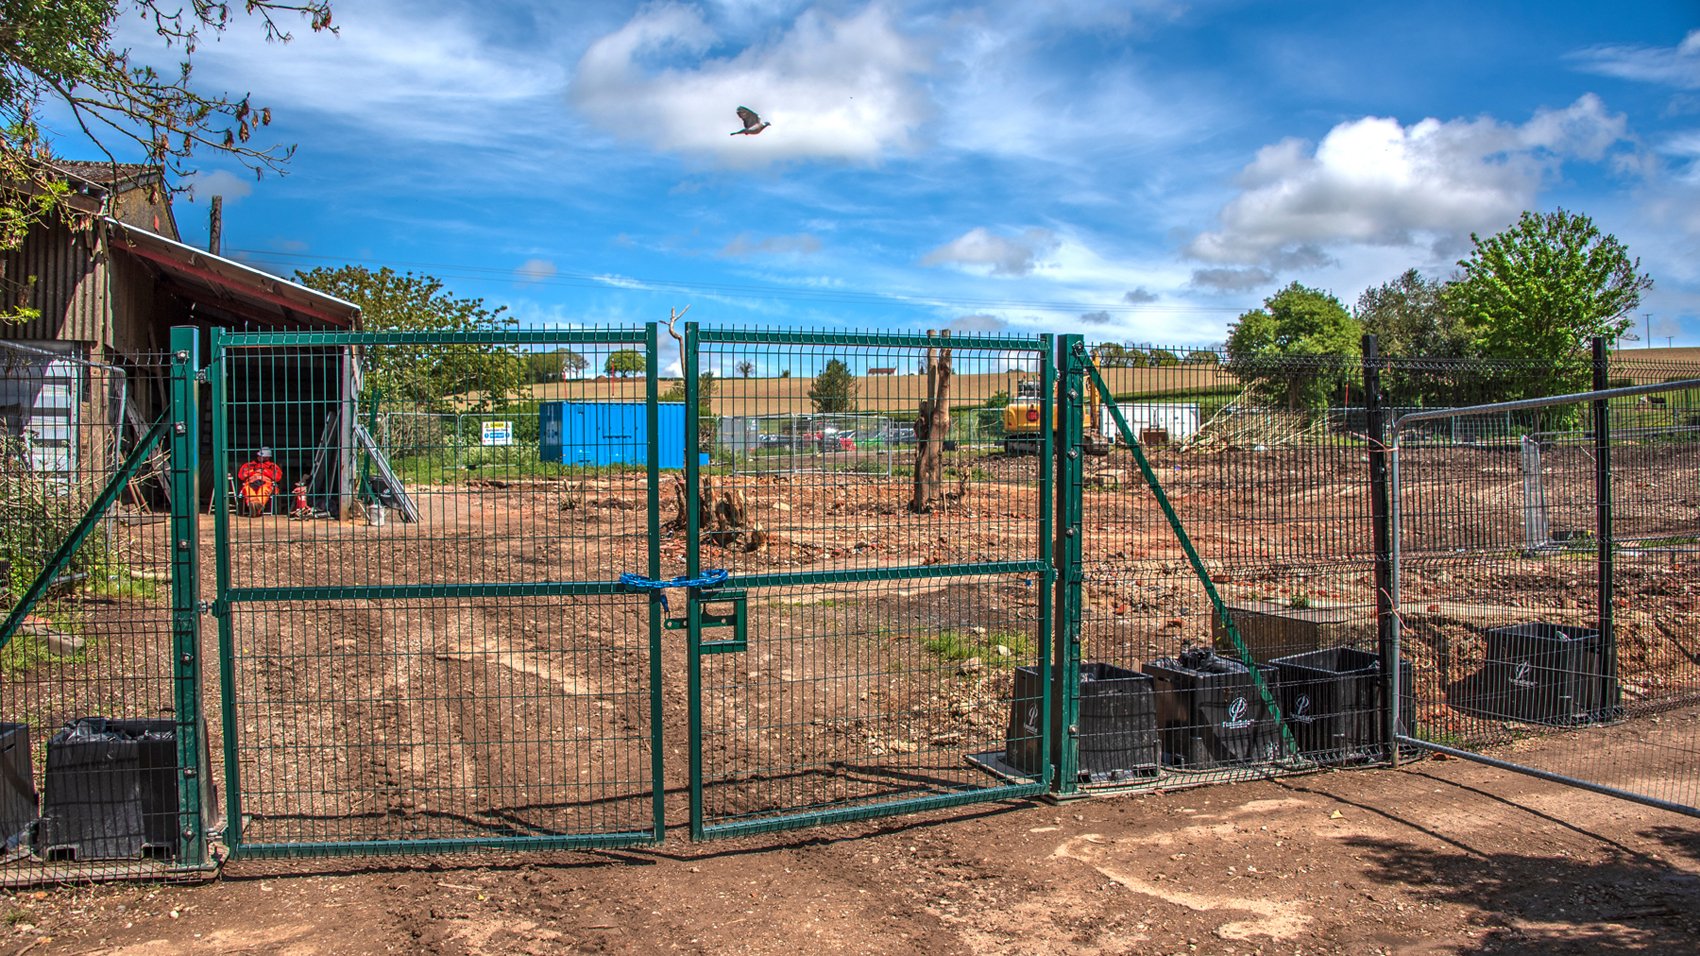 May 2021 - Durham Farm partly demolished